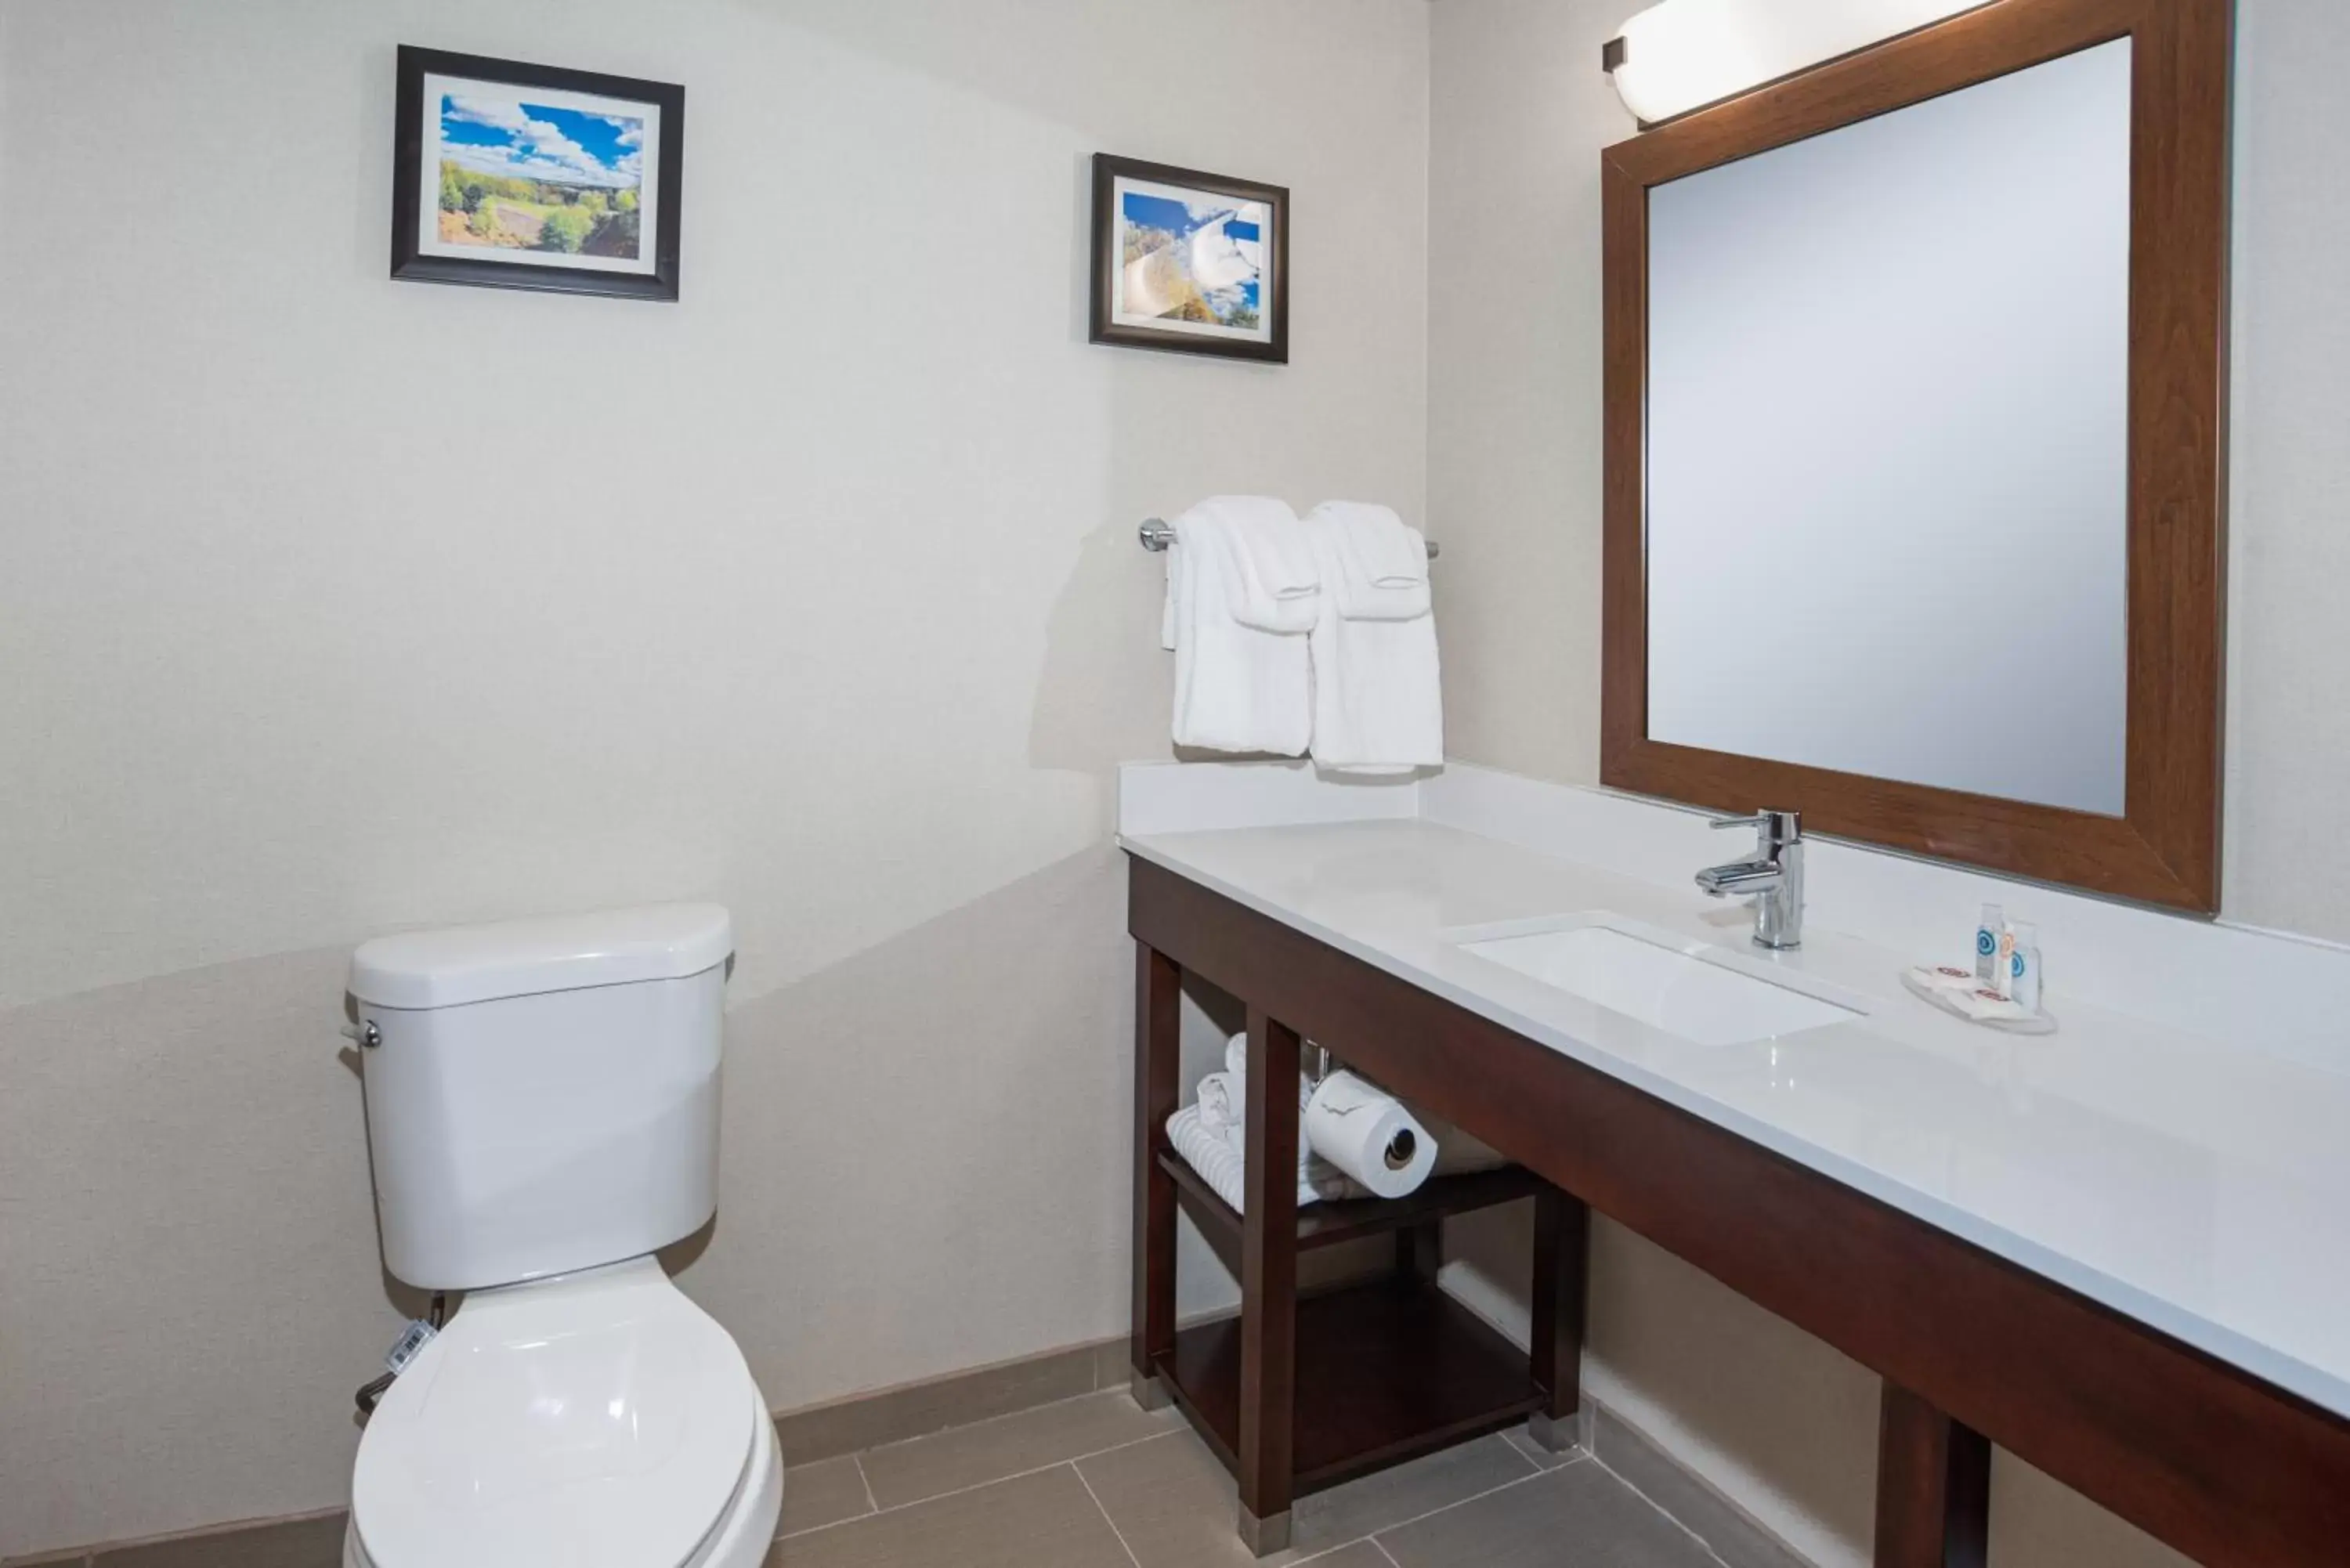 Bathroom in Comfort Inn Naugatuck-Shelton, CT